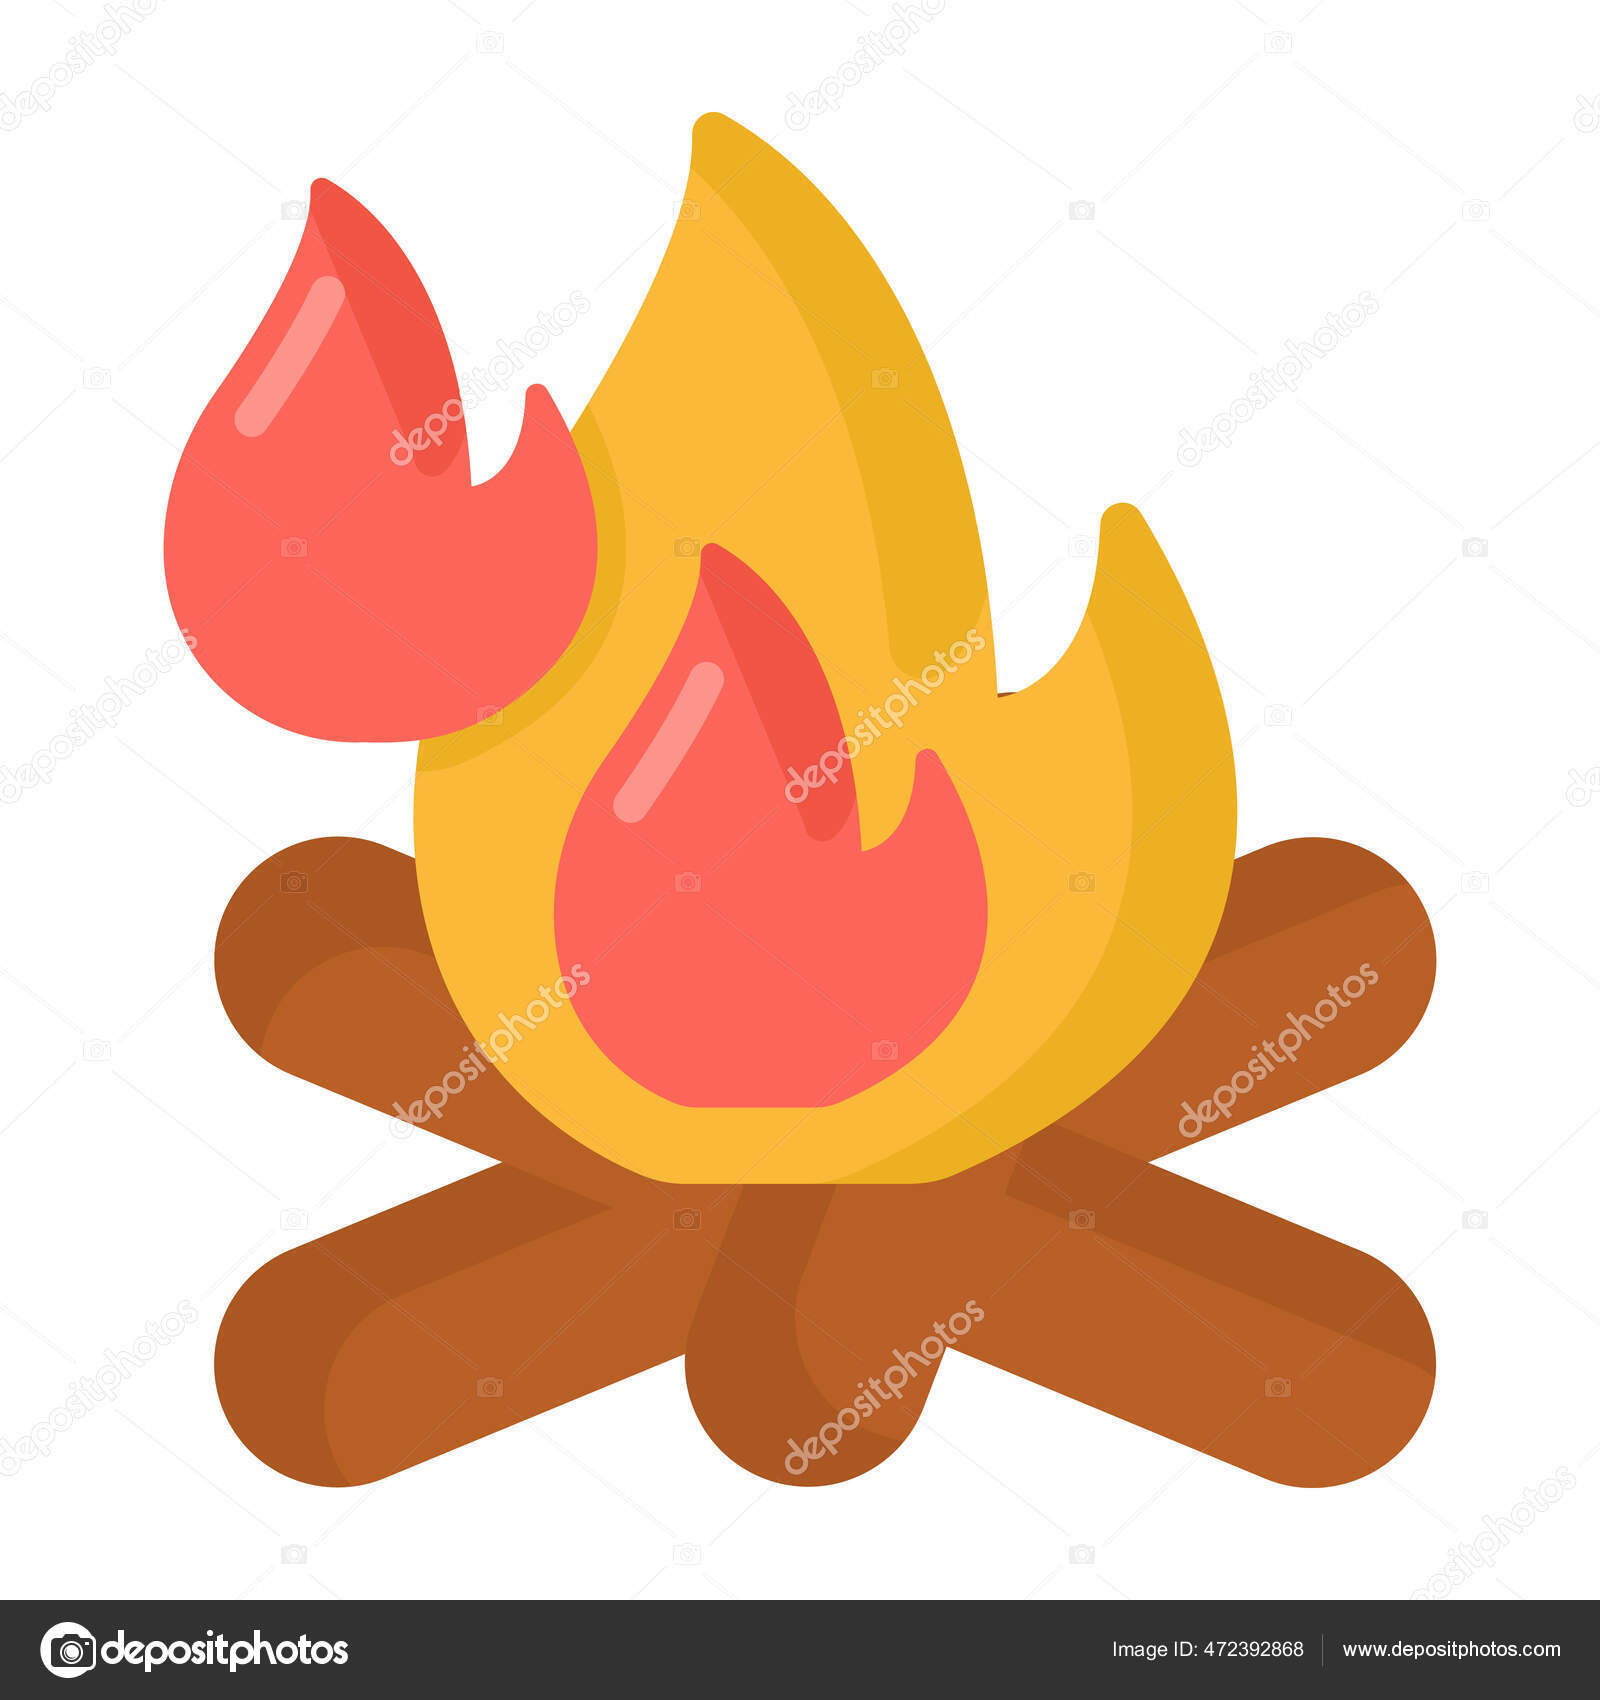 Ilustração de chama vermelha e amarela, desenho de combustão de